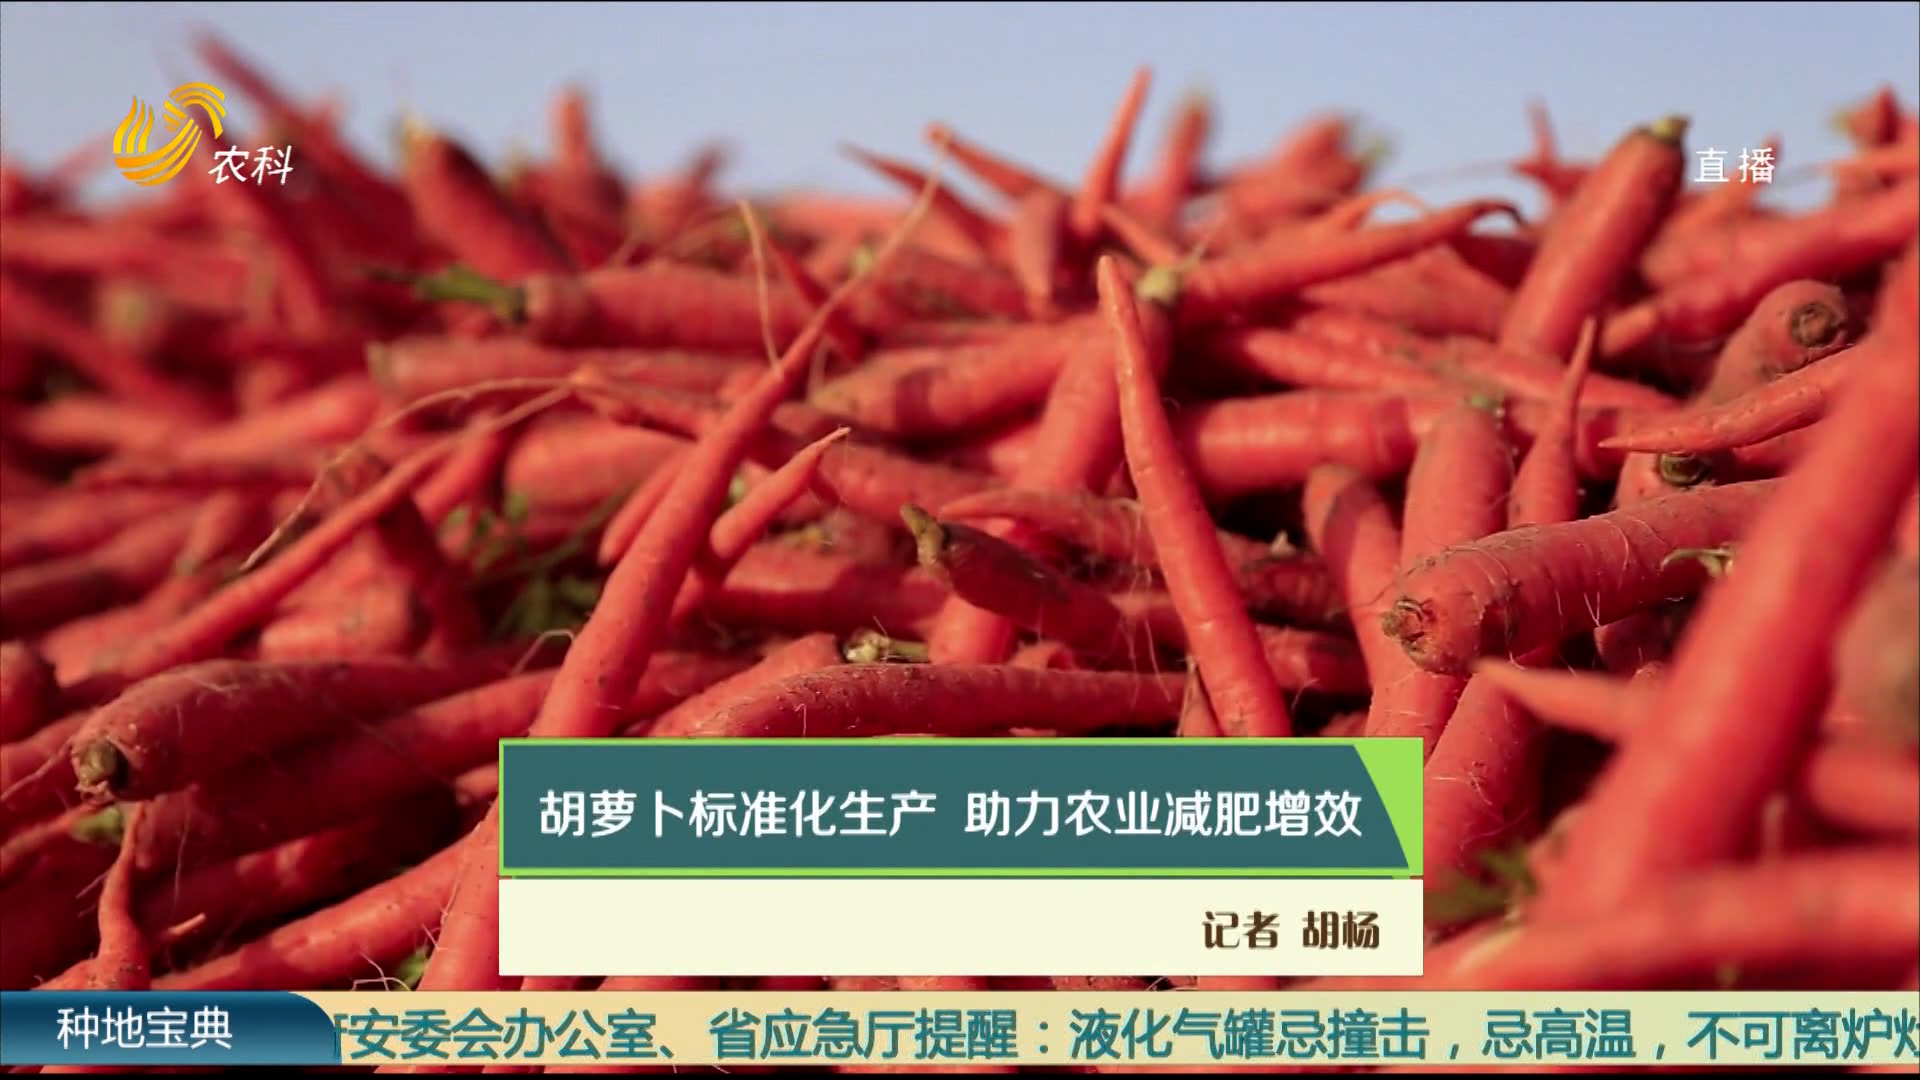 胡蘿卜標準化生產 助力農業減肥增效